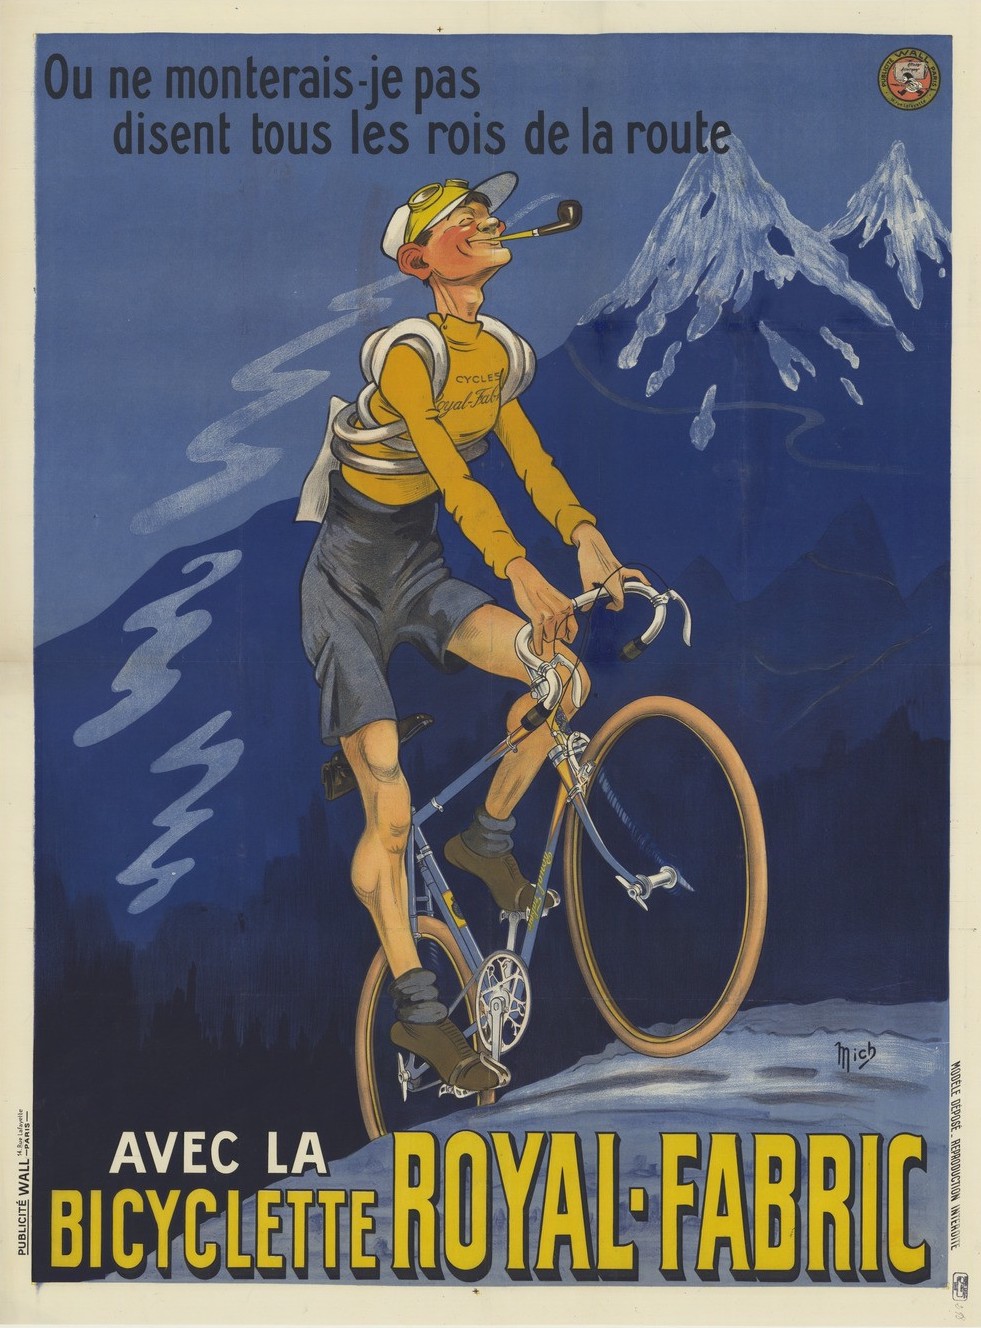 Cartel publicitario de las bicicletas Royal-Fabric